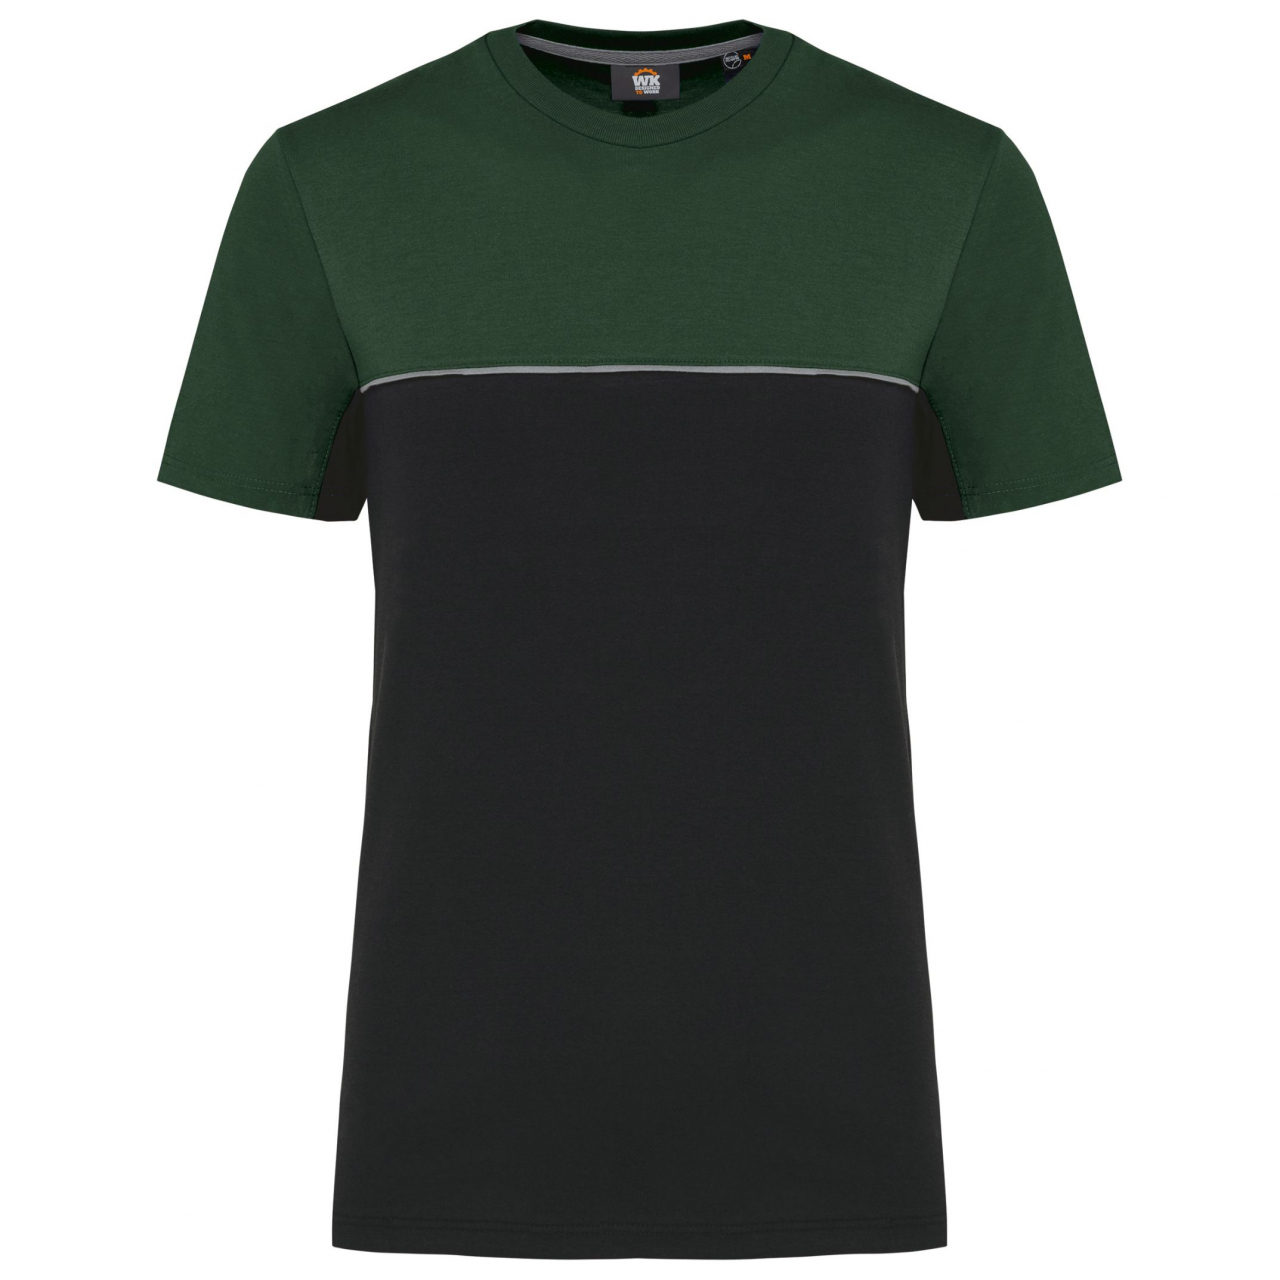 Pracovní triko dvoubarevné WK - černé-zelené, 3XL